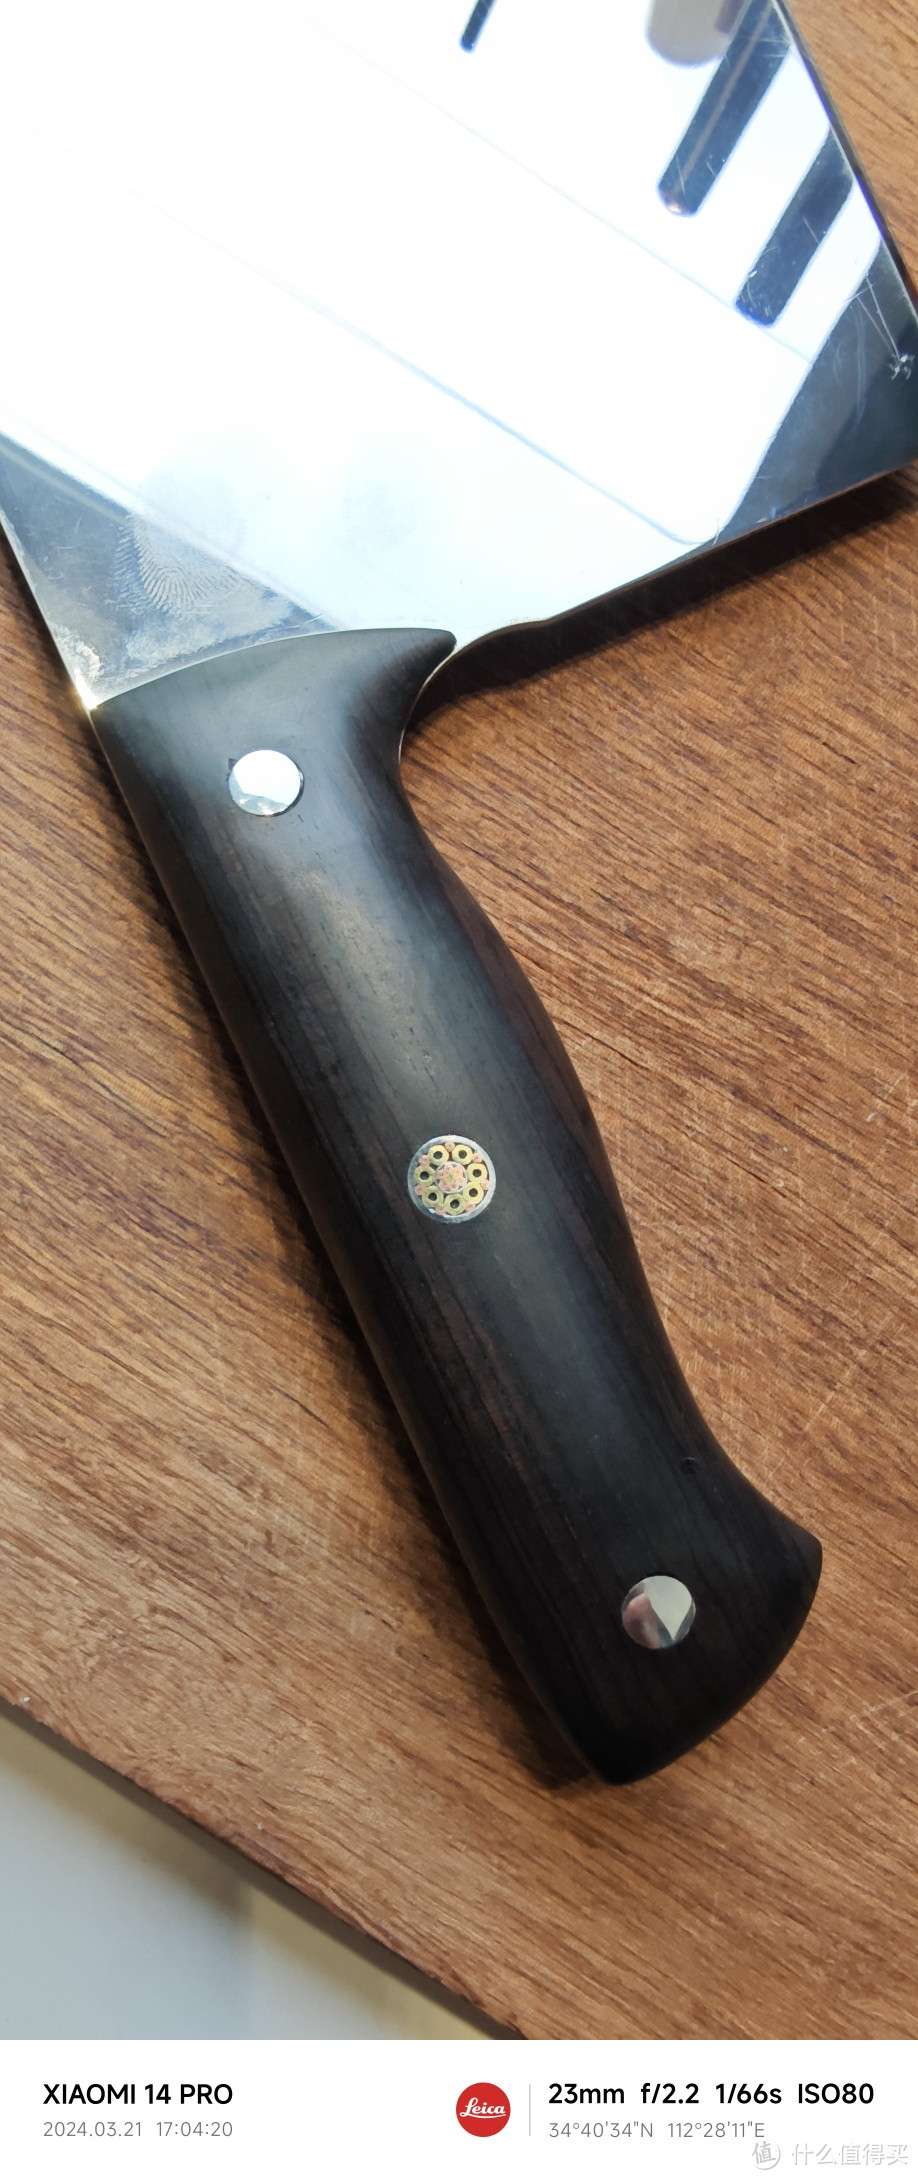 自制M390中式渐薄切片厨刀。